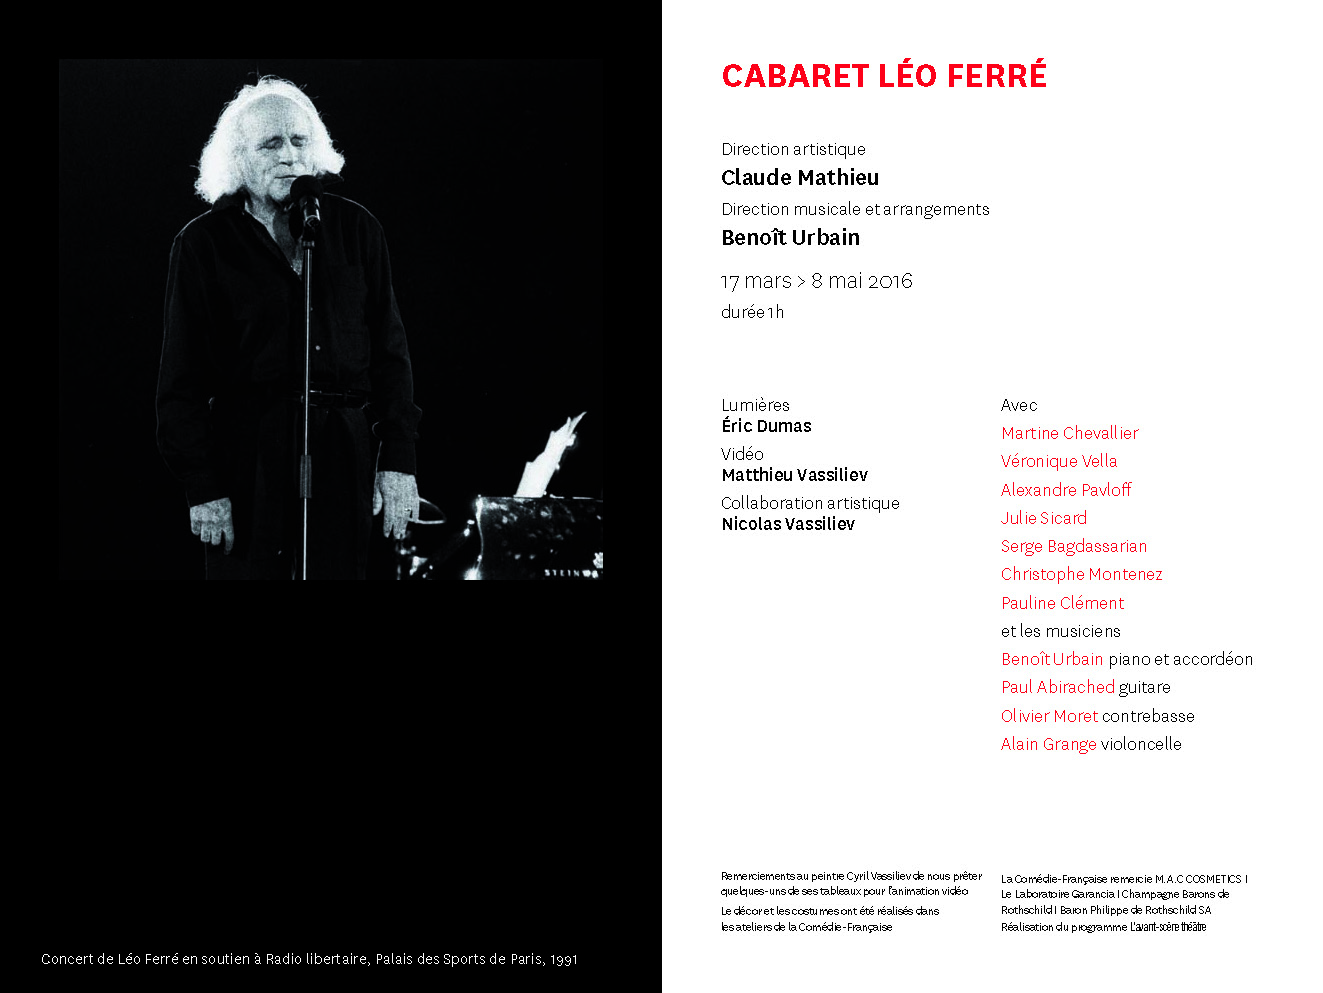 17/03/2016 programme Cabaret Léo Ferré de la Comedie Française